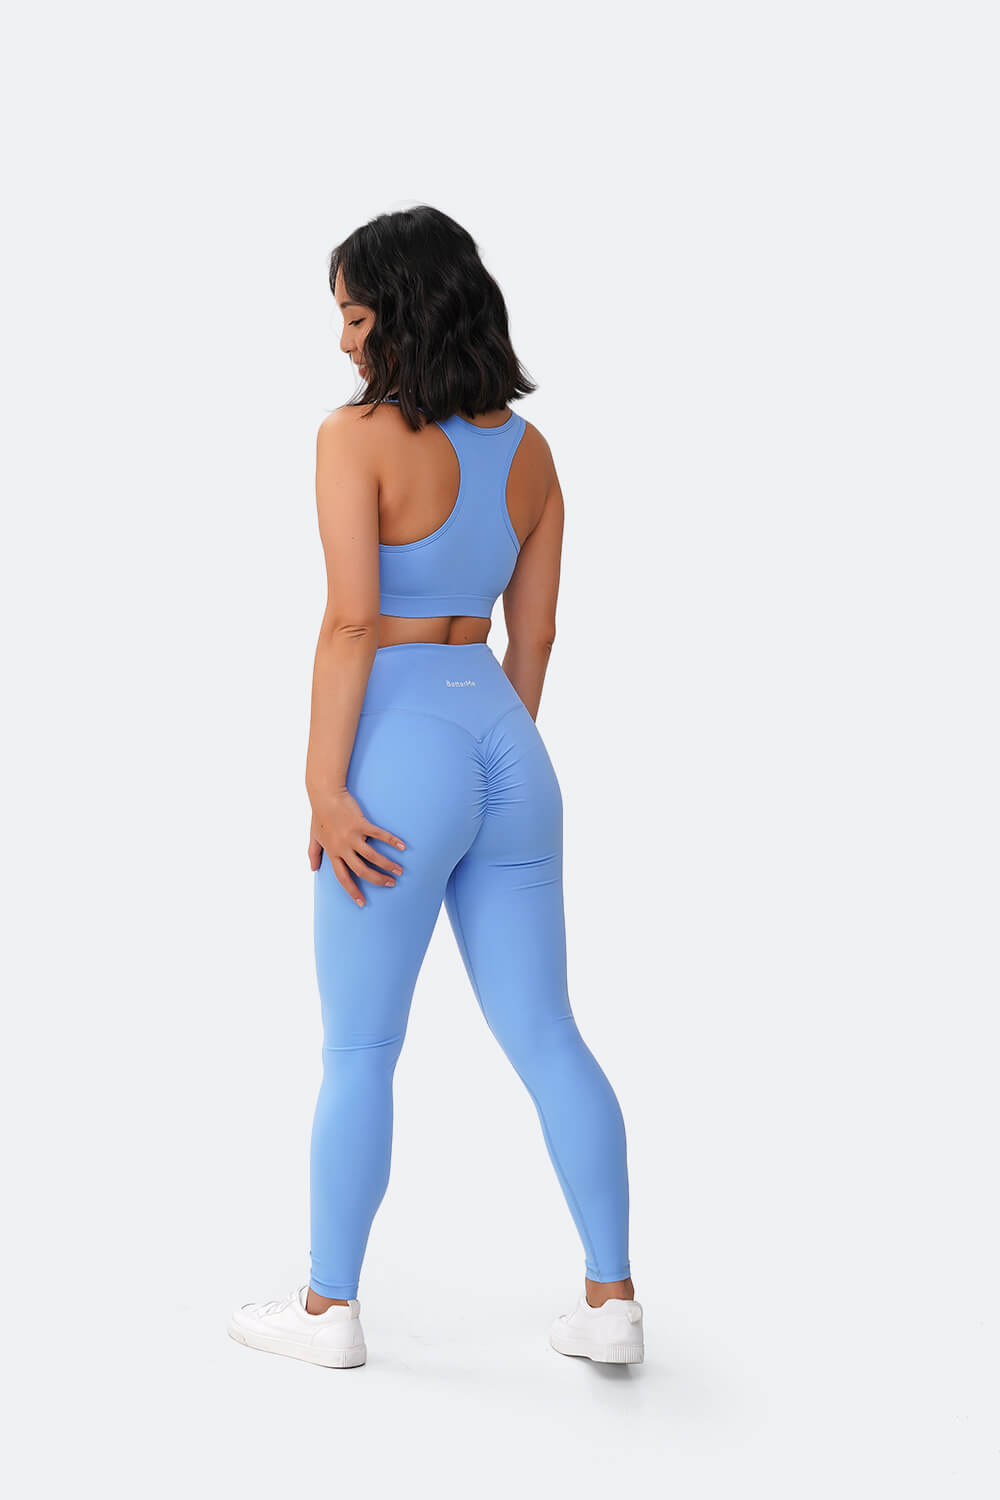 BetterMe Push-up Bra in Blue for women – BetterMe Store